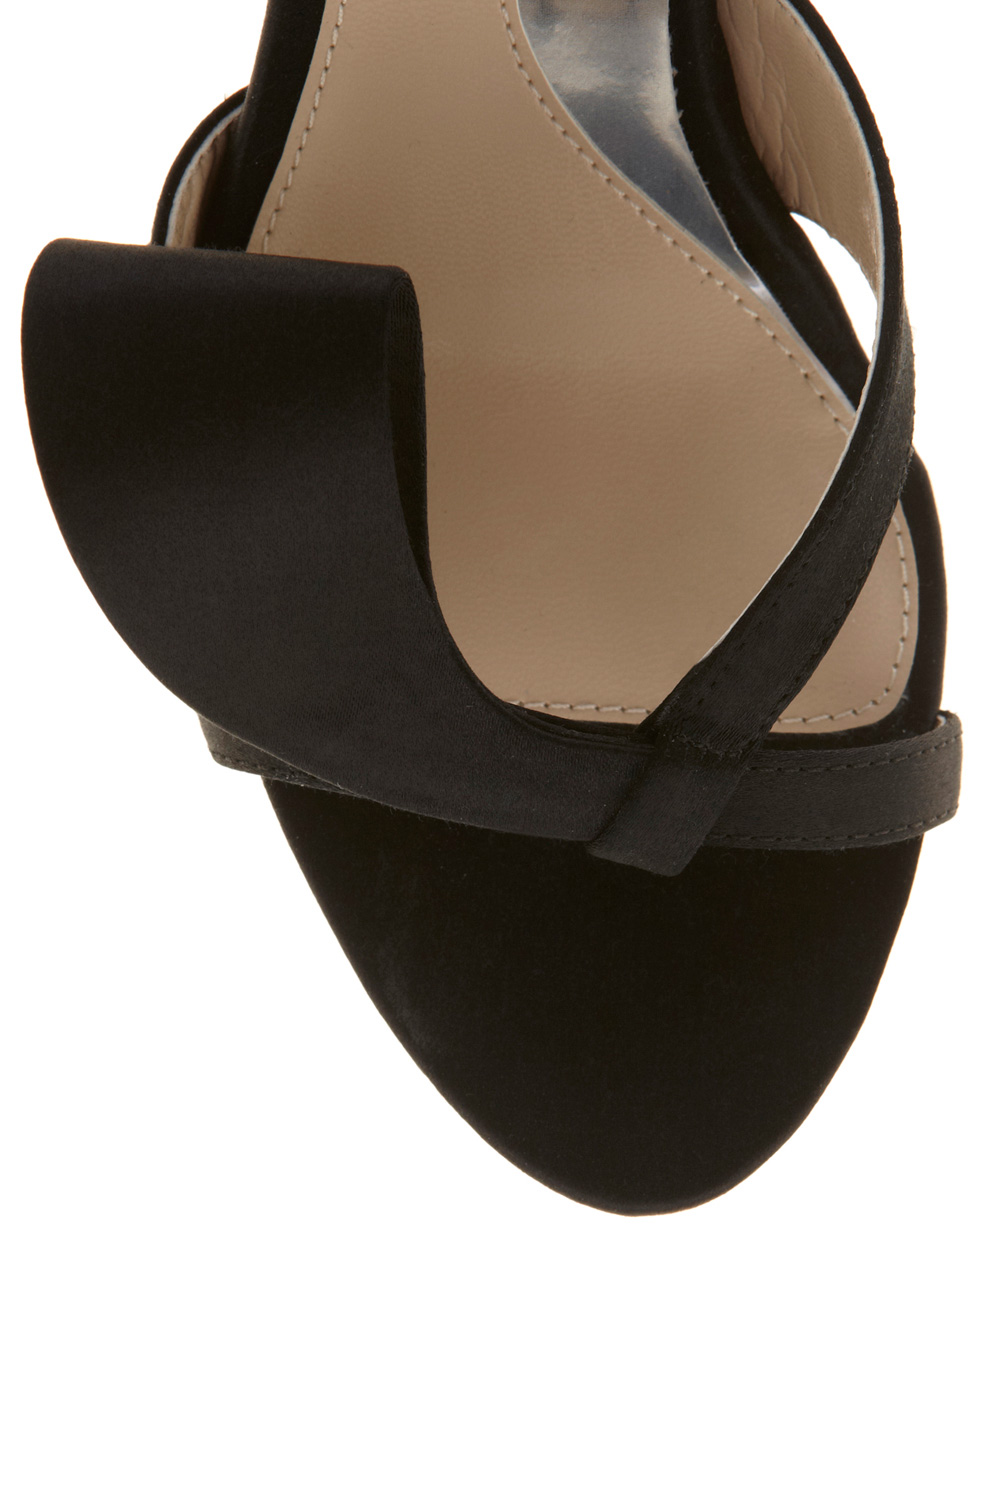 Lyst - Coast Lana Shoe in Black